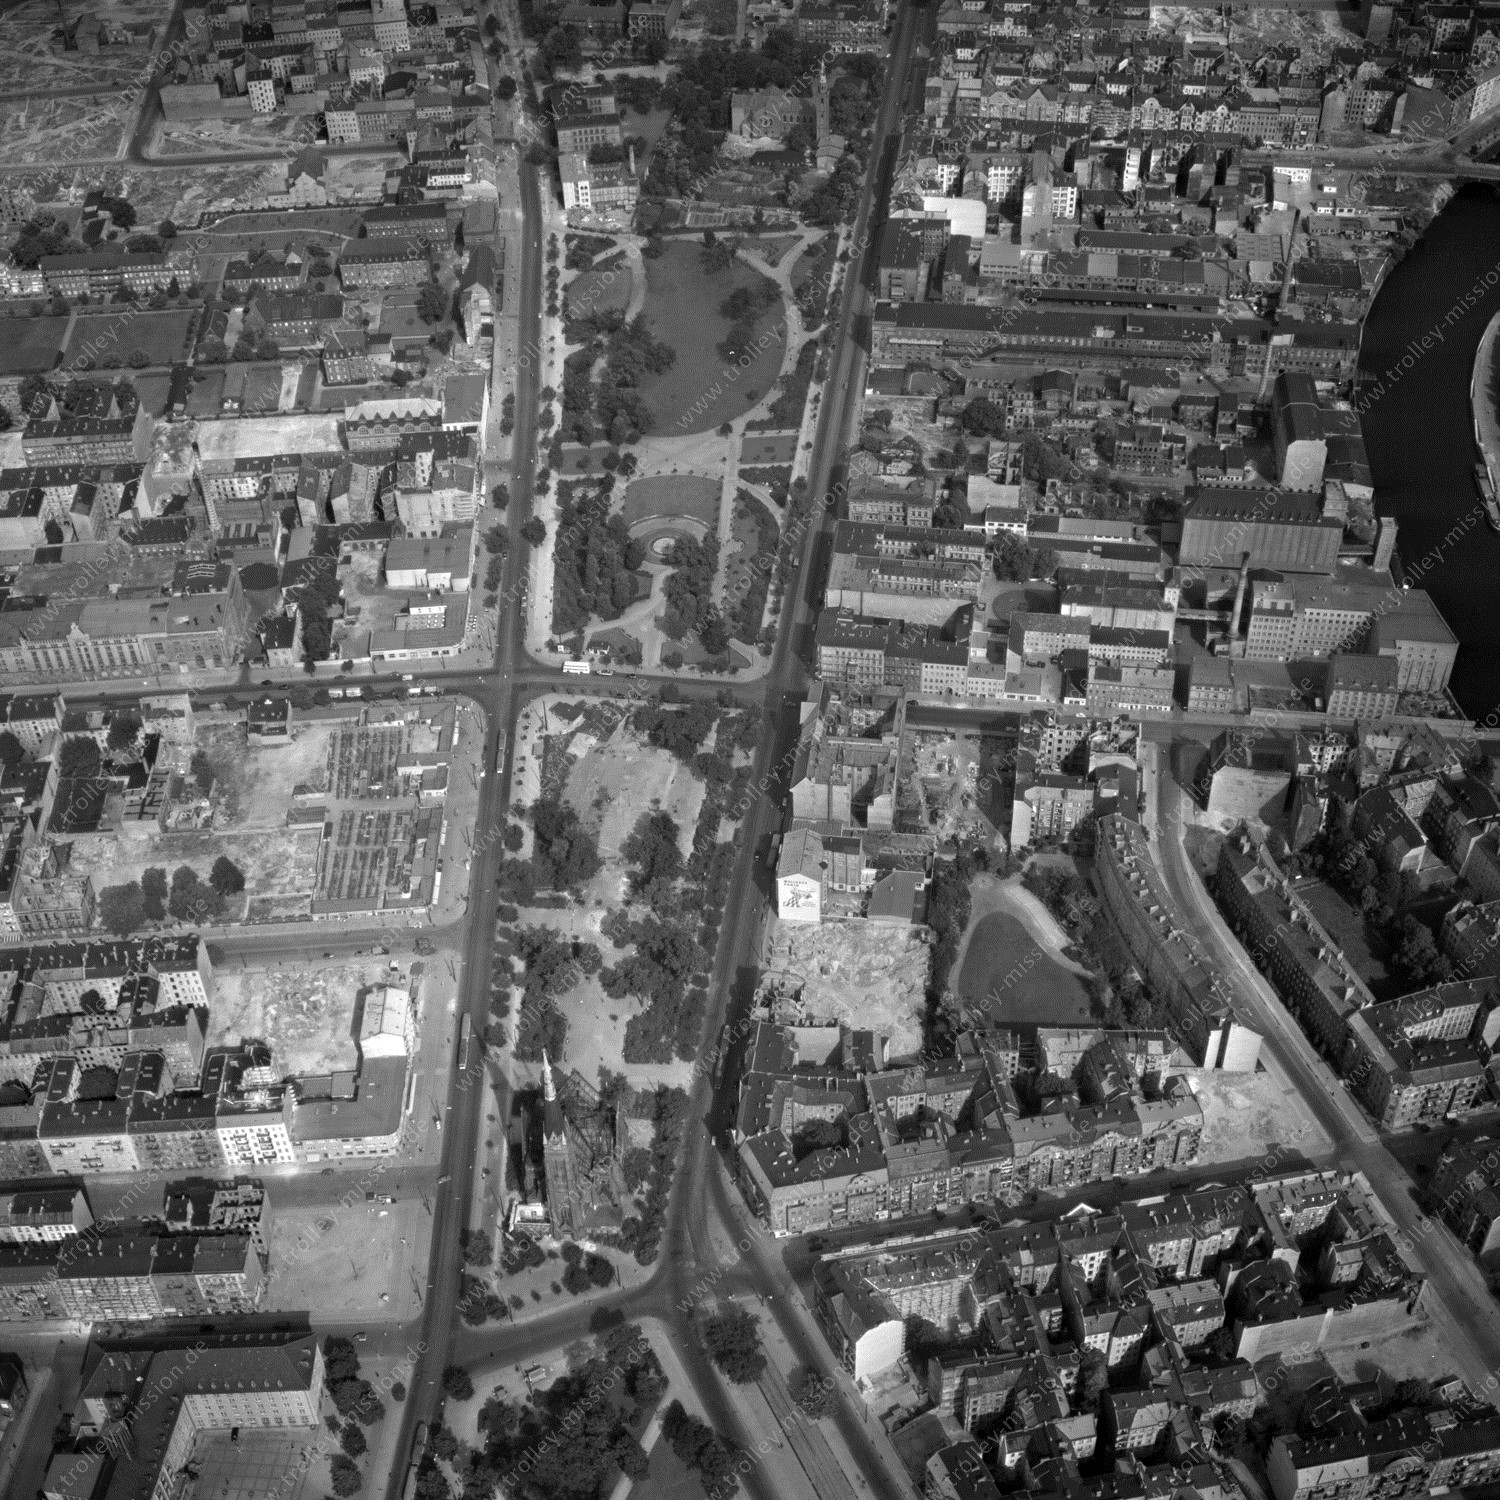 Alte Fotos und Luftbilder von Berlin - Luftbildaufnahme Nr. 08 - Historische Luftaufnahmen von West-Berlin aus dem Jahr 1954 - Flugstrecke Victor